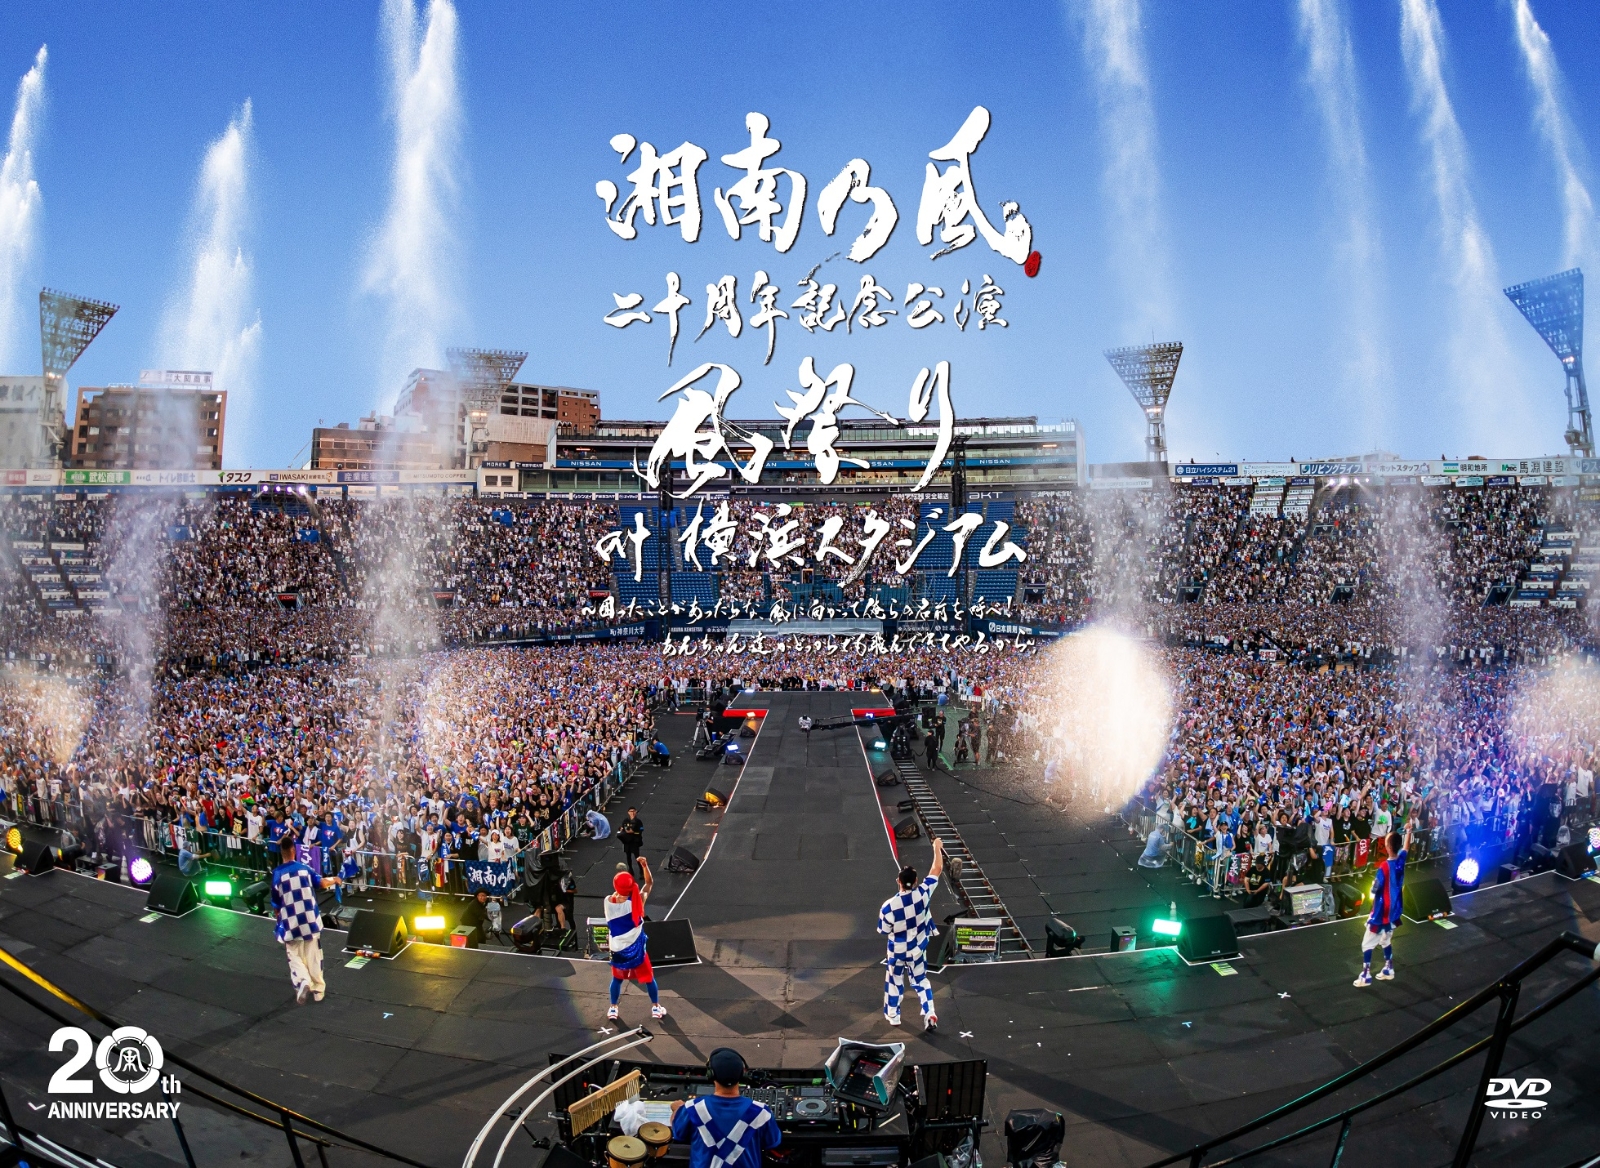 楽天ブックス: 湘南乃風 二十周年記念公演 「風祭り at 横浜スタジアム